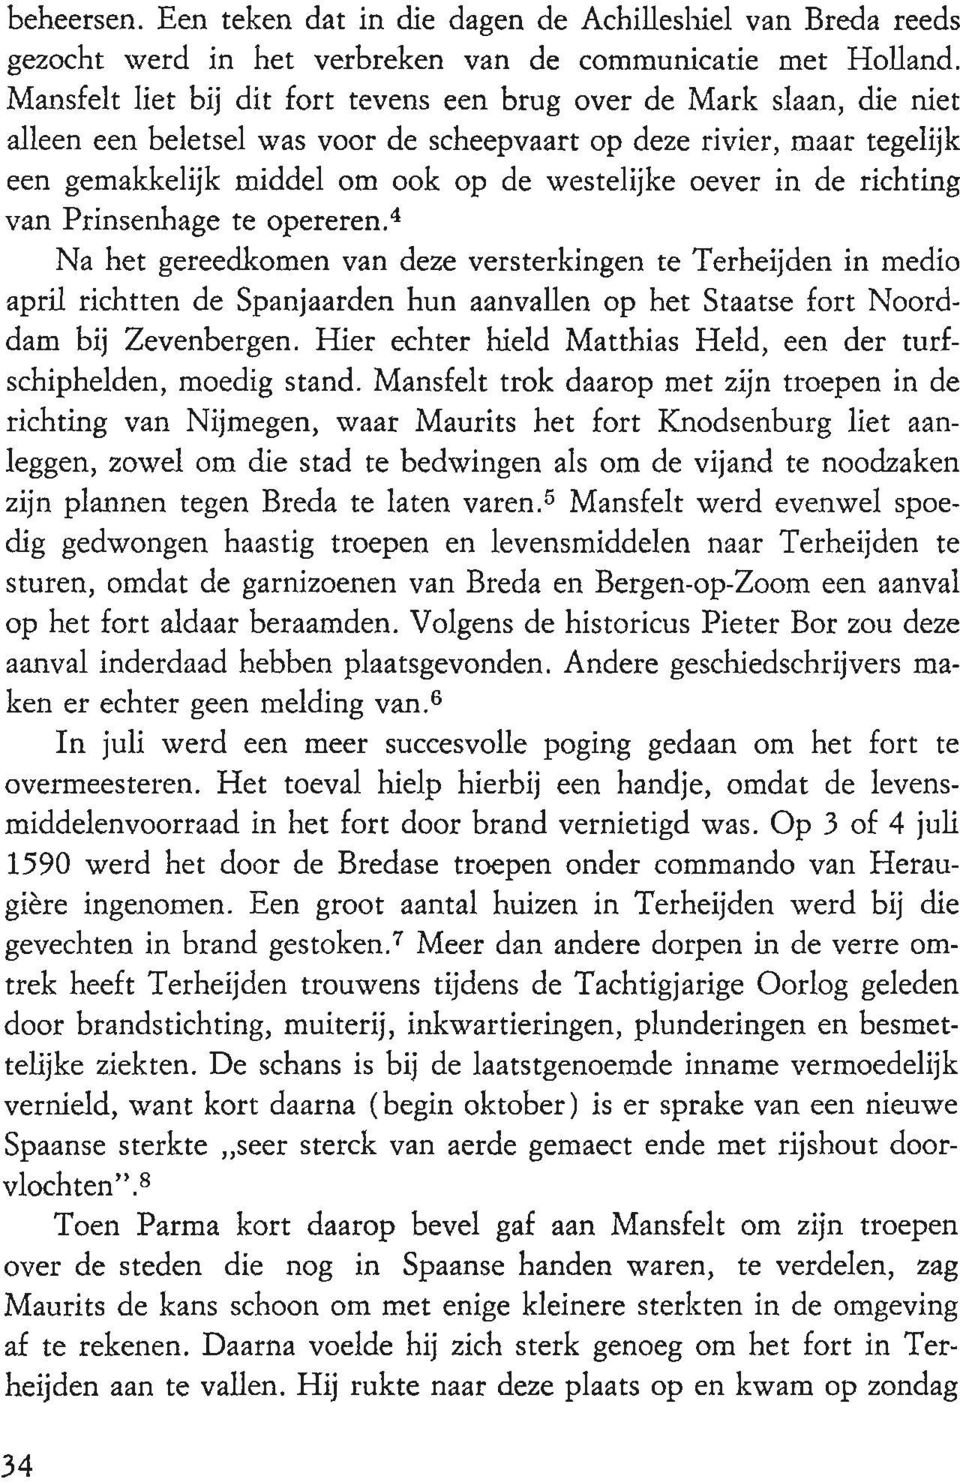 in de richting van Prinsenhage te opereren. 4 Na het gereedkomen van deze versterkingen te Terheijden in medio april richtten de Spanjaarden hun aanvallen op het Staatse fort Noorddam bij Zevenbergen.